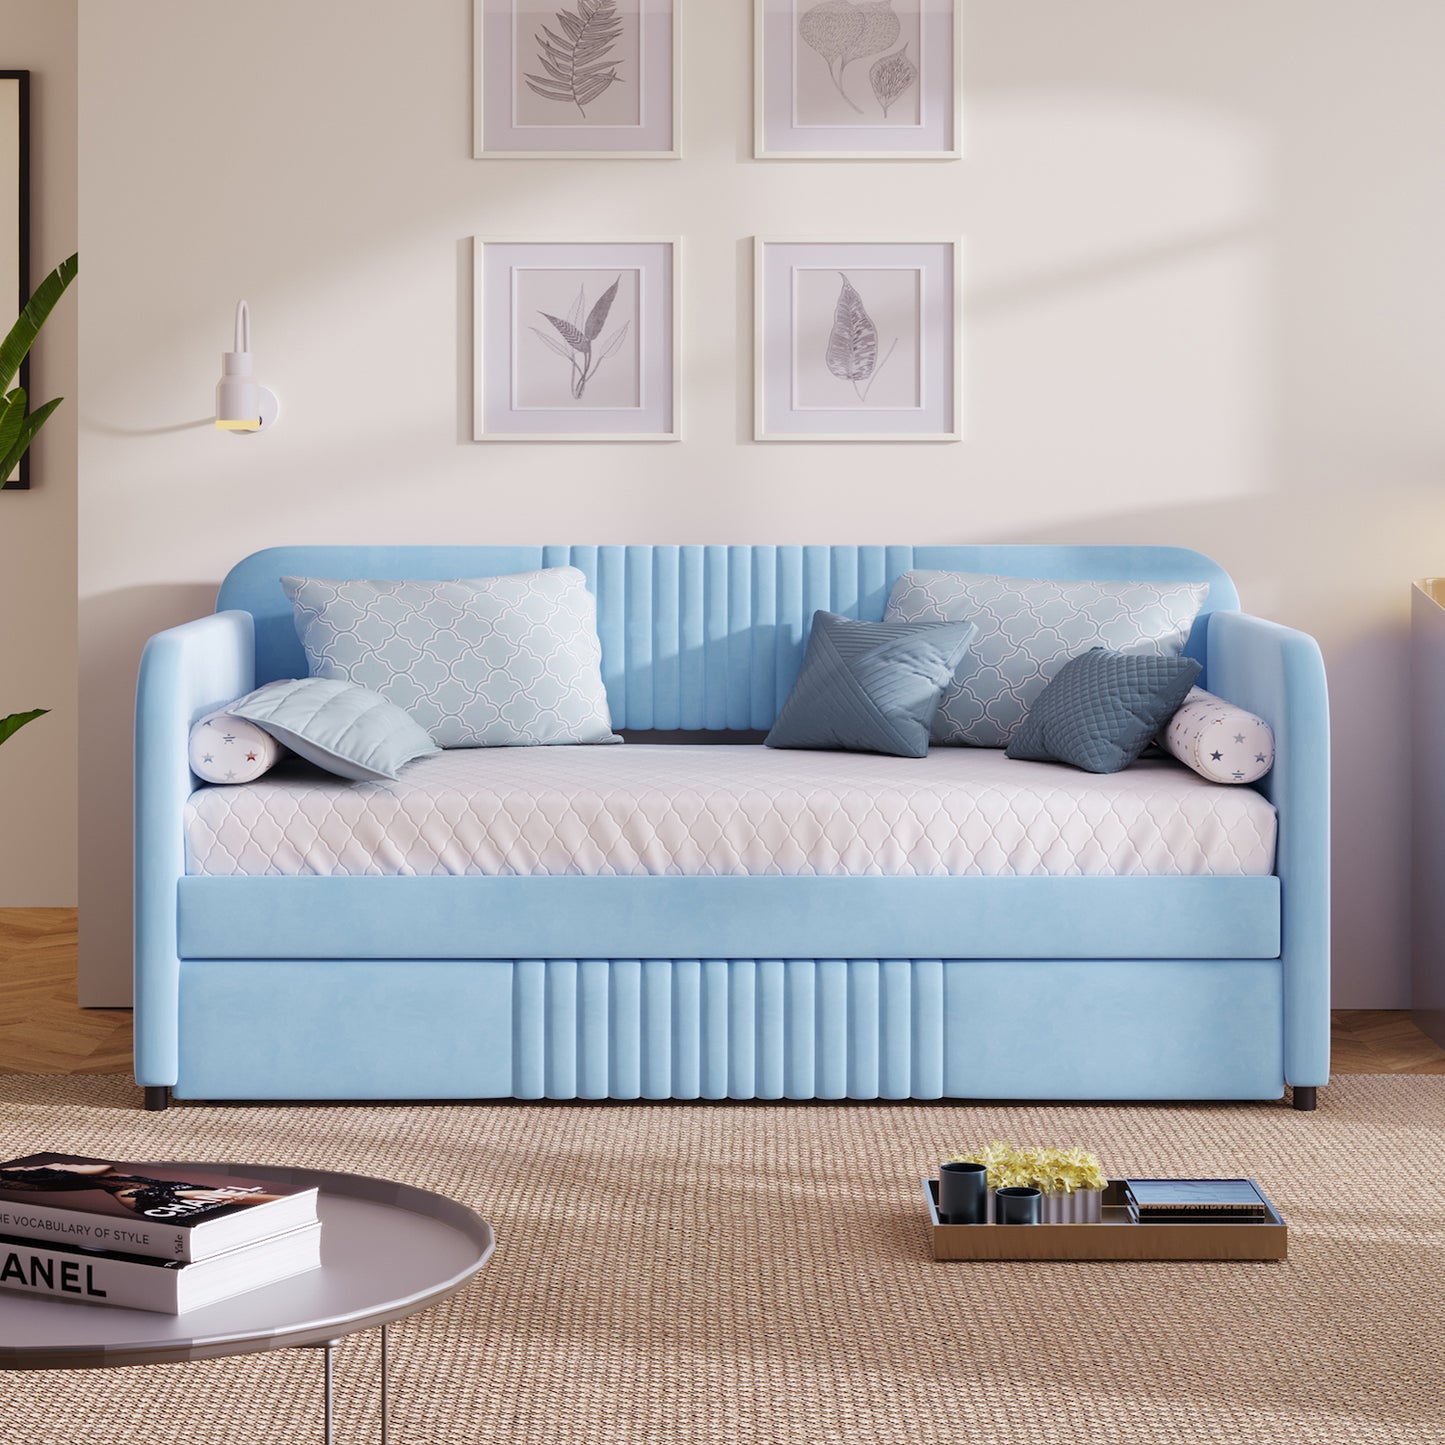 Ladybug Light Blue Upholstered Daybed & Trundle Set